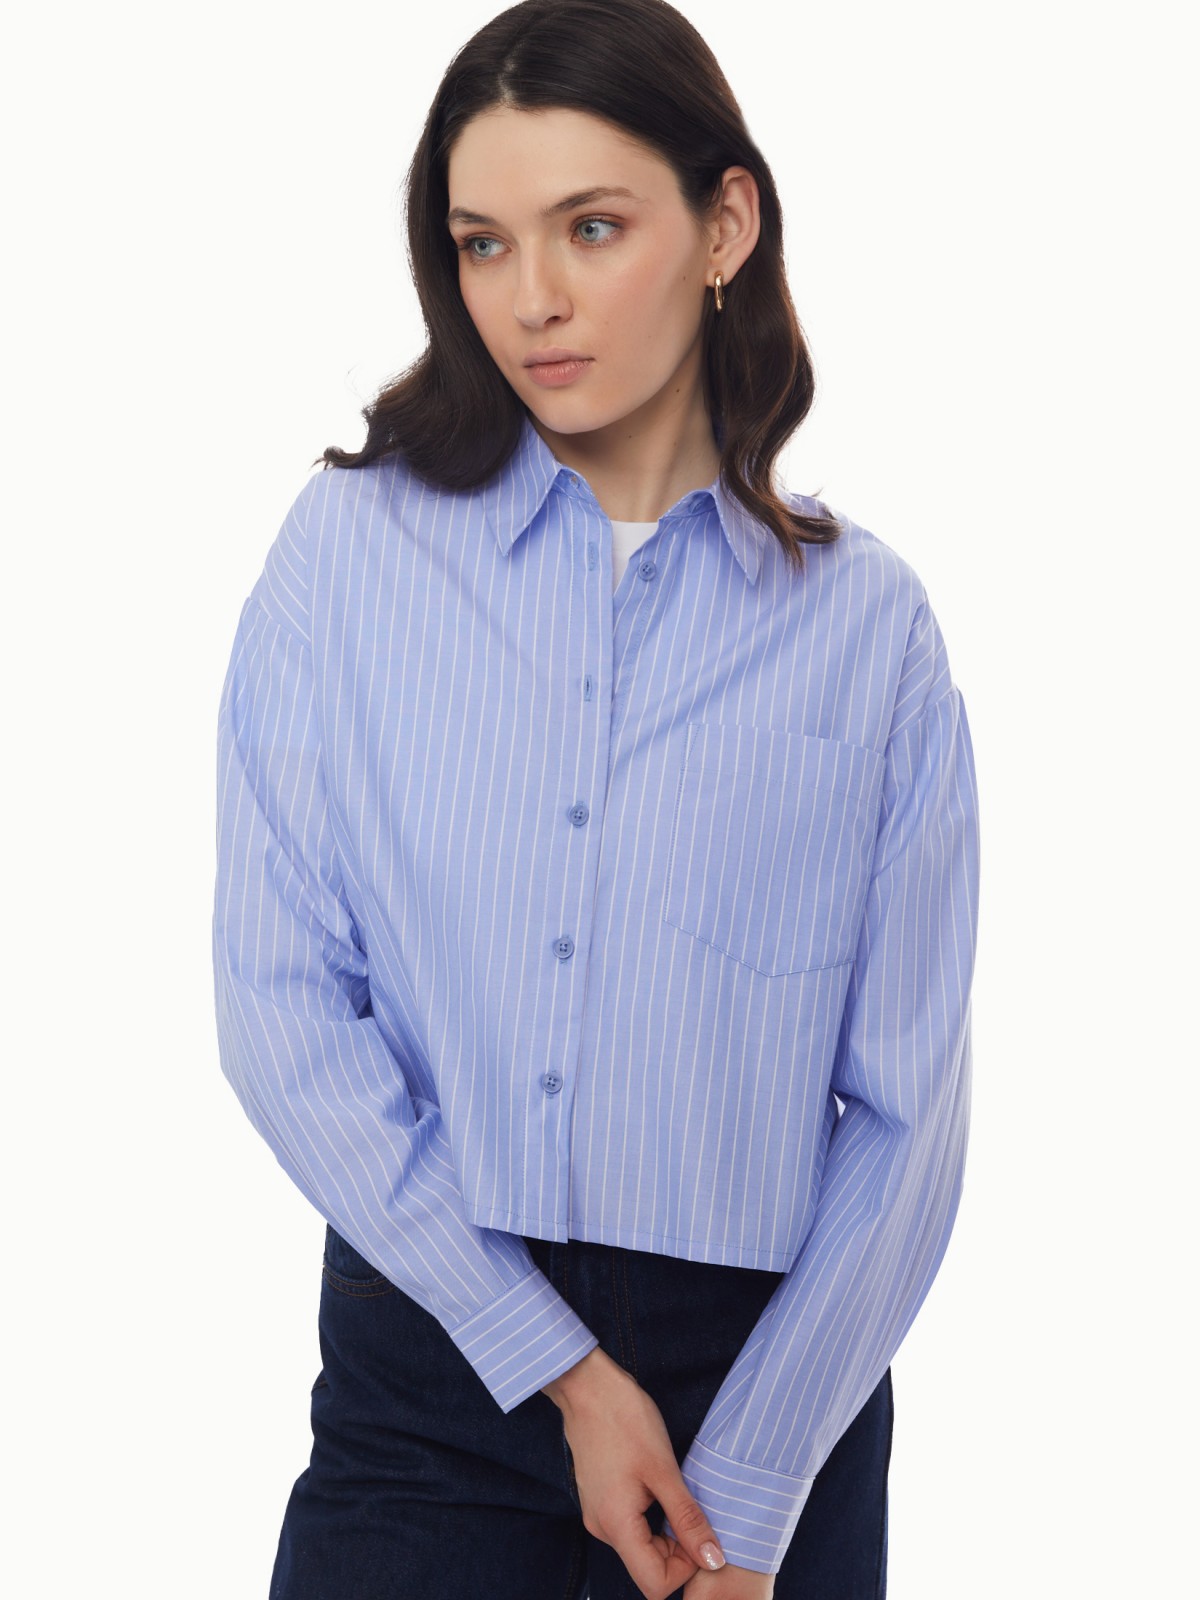 Рубашка укороченного силуэта с узором в полоску zolla 024131159163, цвет светло-голубой, размер XS - фото 3